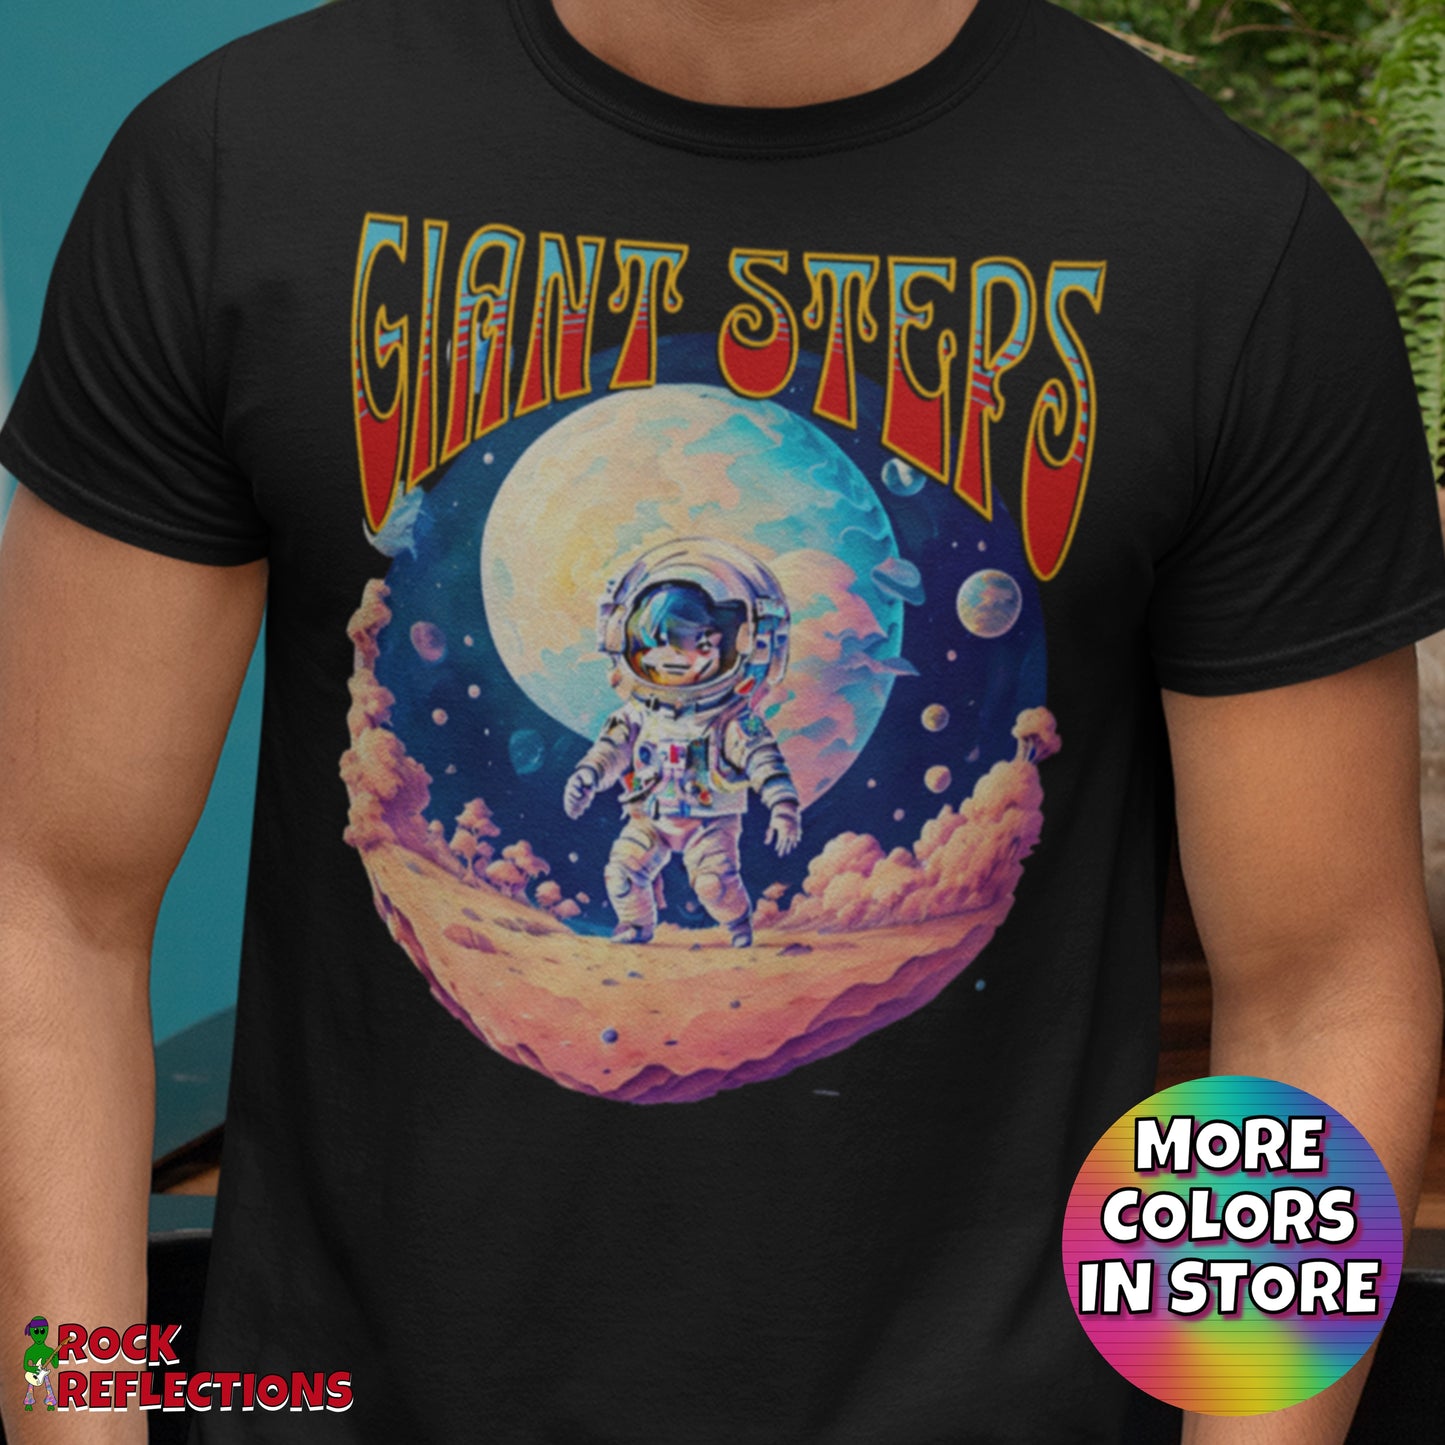 Giant Steps 2 T-Shirt SPOD